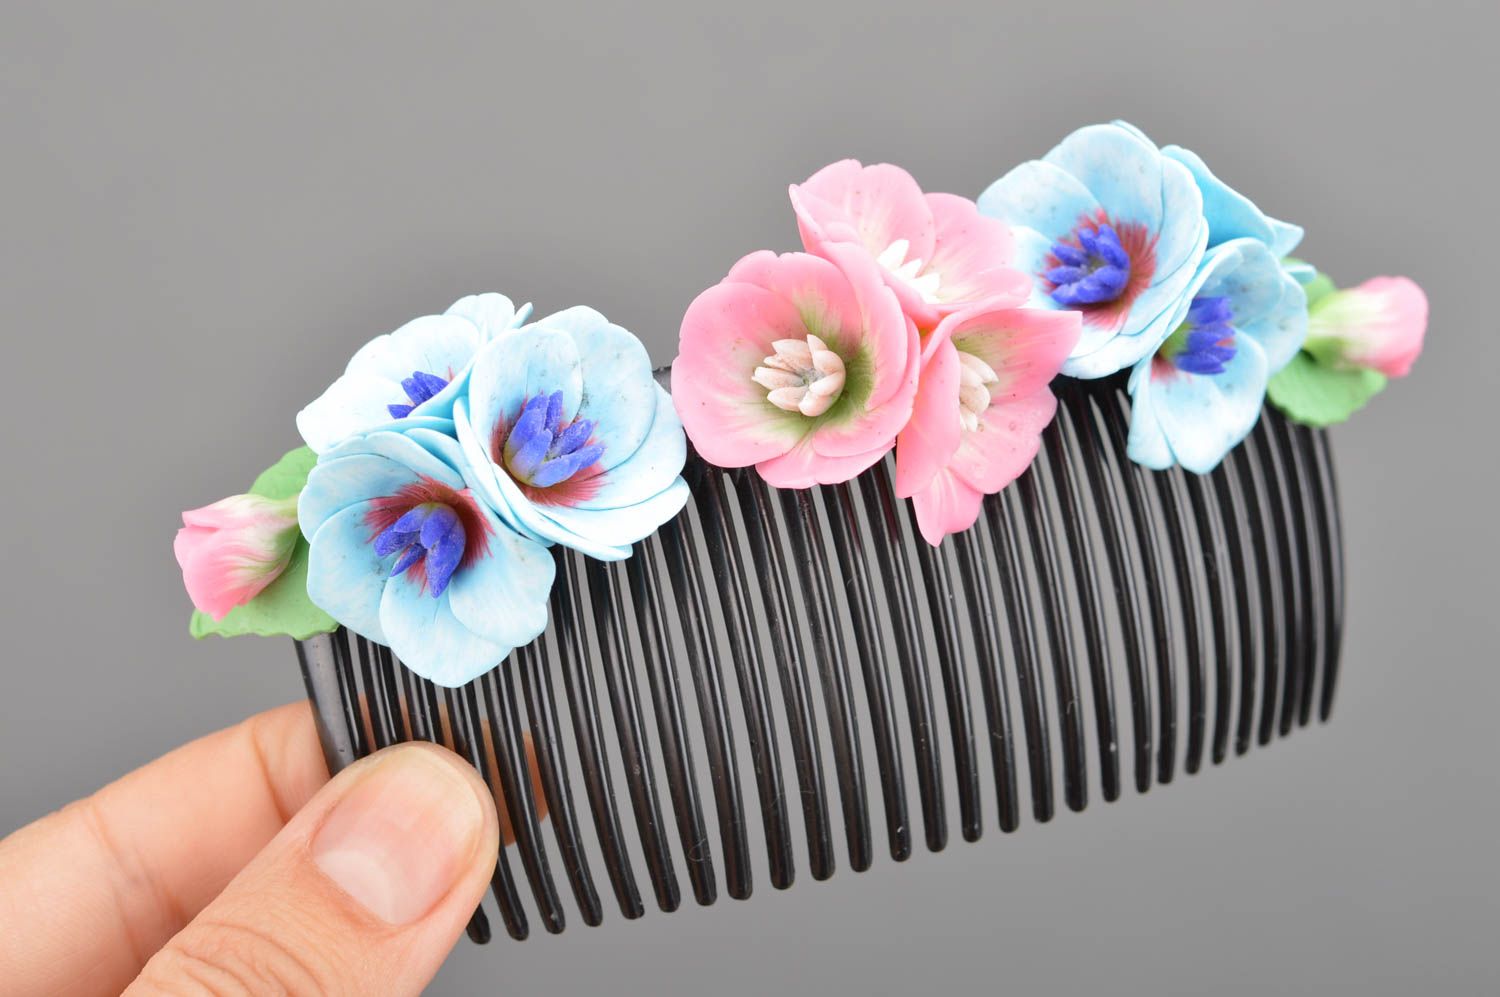 Handgemachter Haarkamm mit Blumen aus Polymerton für fraulichen festlichen Look foto 2